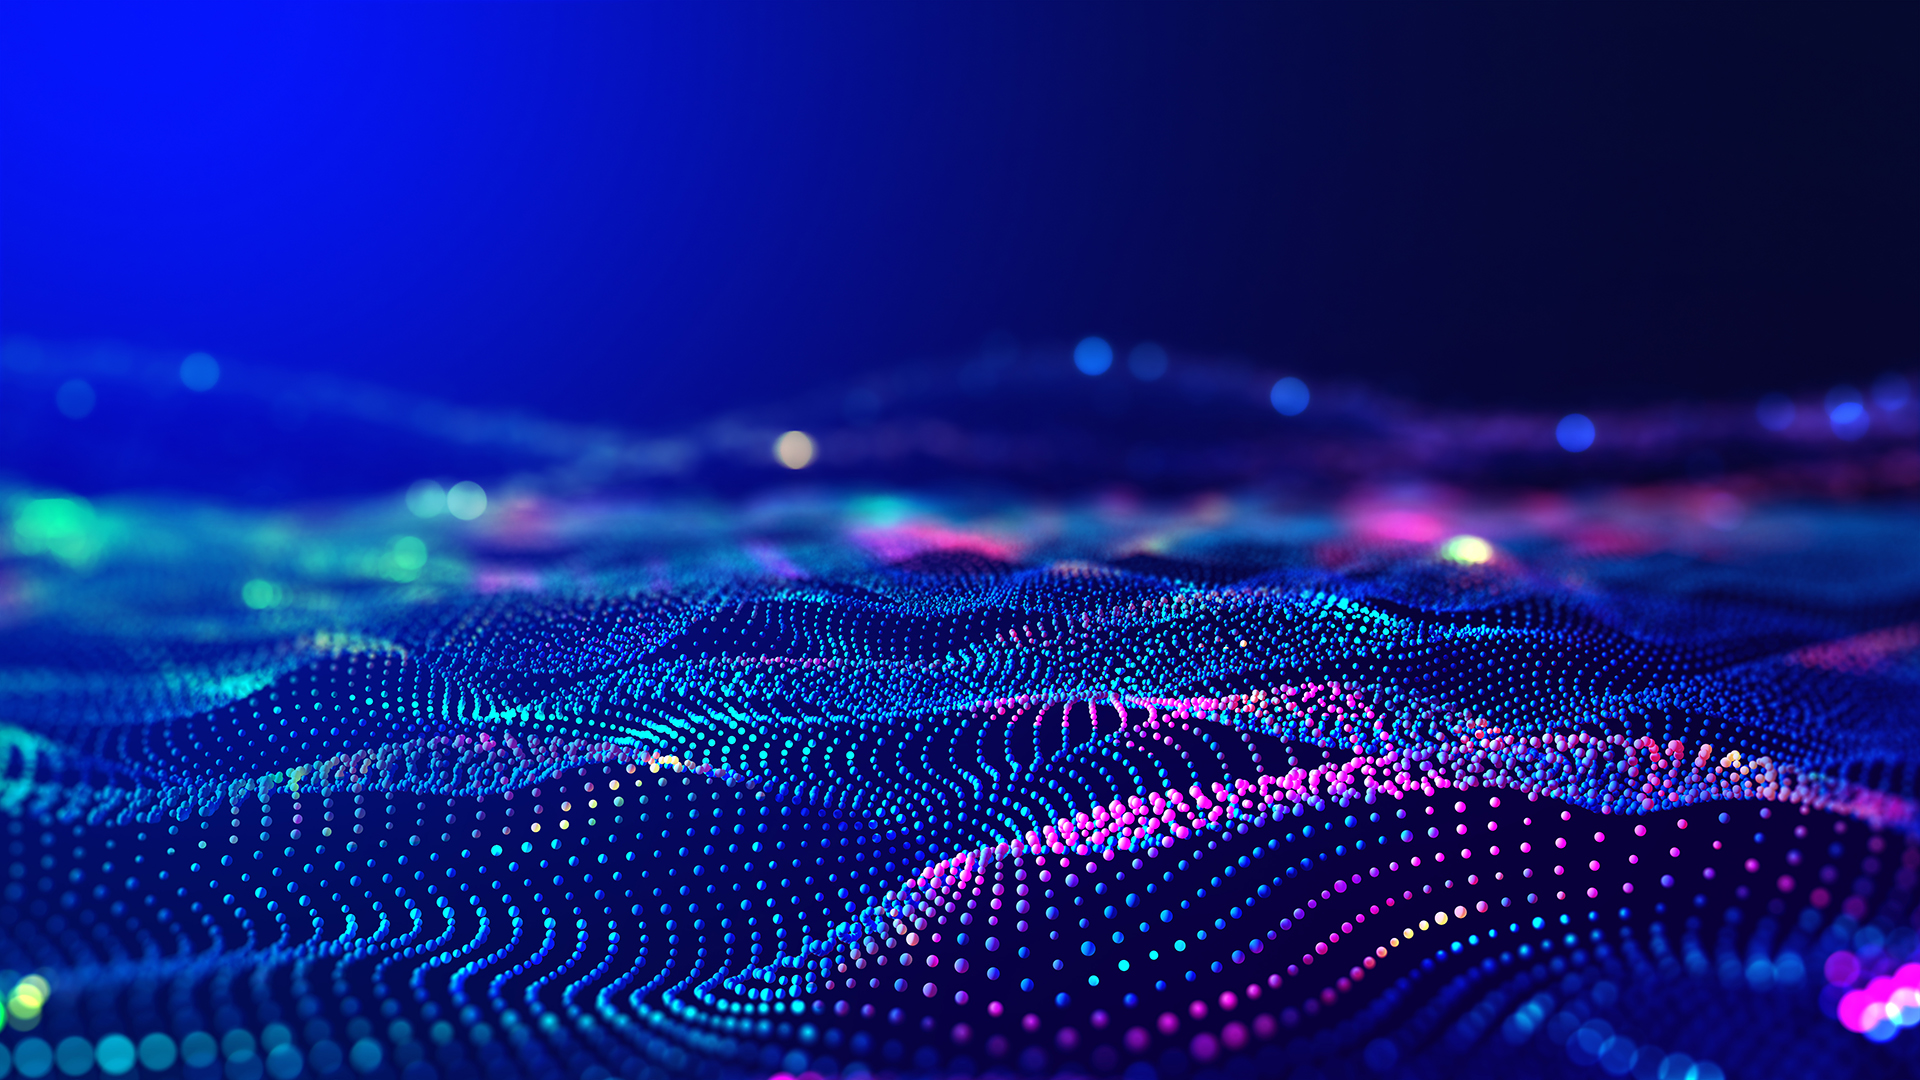 这是一张展示虚拟数字化波纹的图片，颜色丰富，以蓝色为主，呈现出高科技感的动态粒子波浪效果。